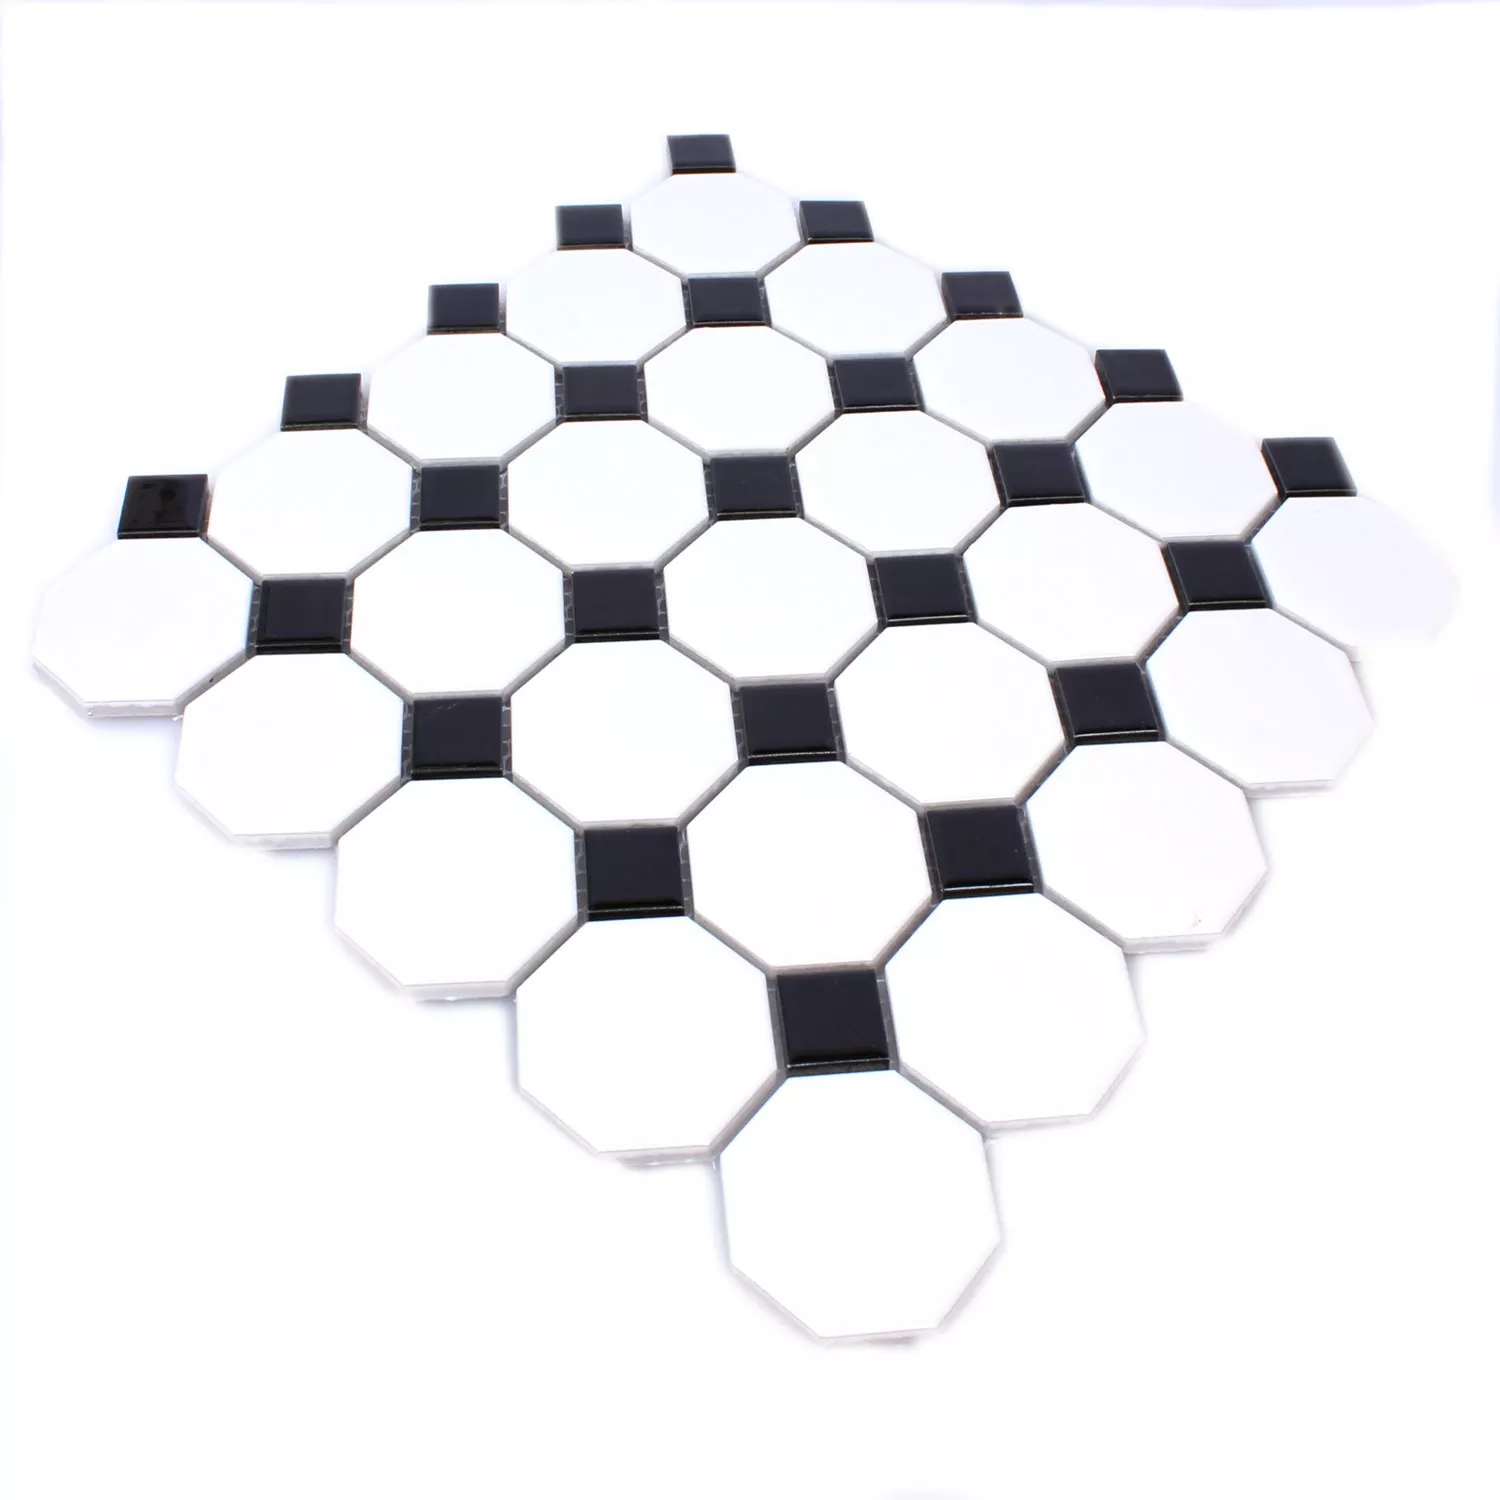 Sample Mosaic Tiles Ceramic Octagon Belami Black White